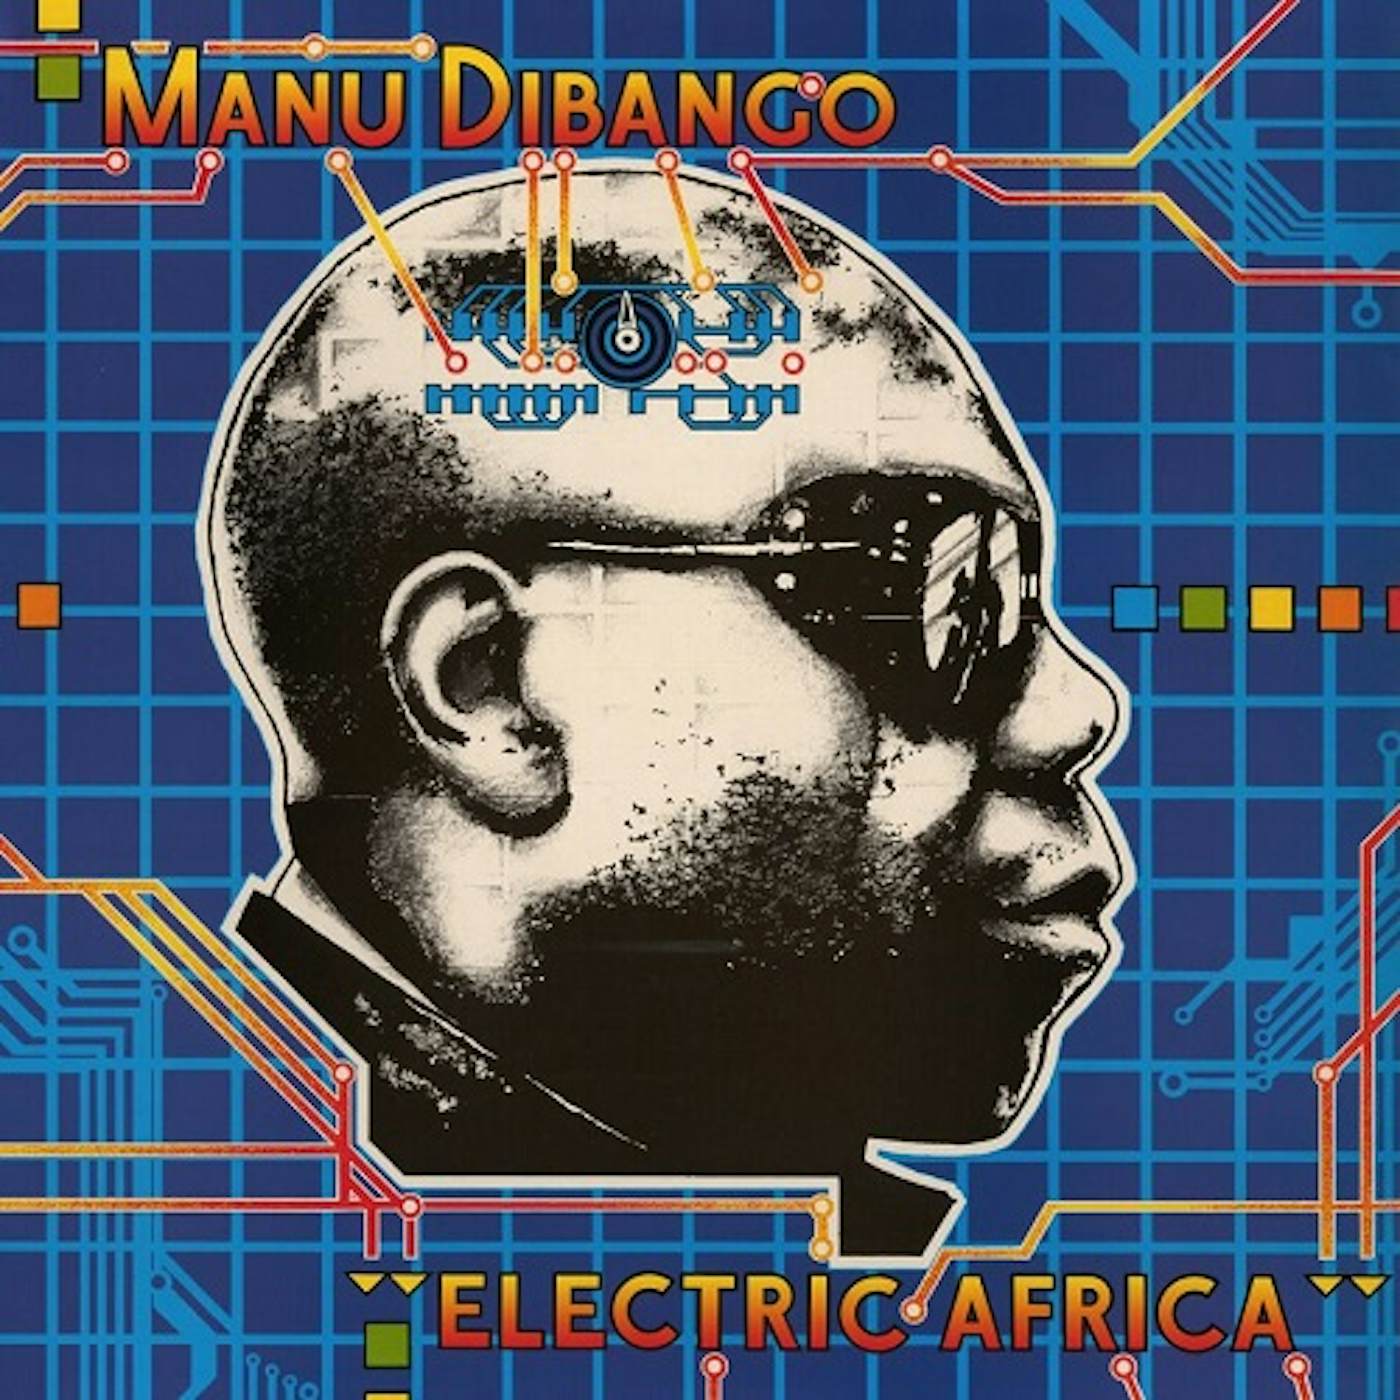 Manu Dibango Electric Africa Vinyl Record